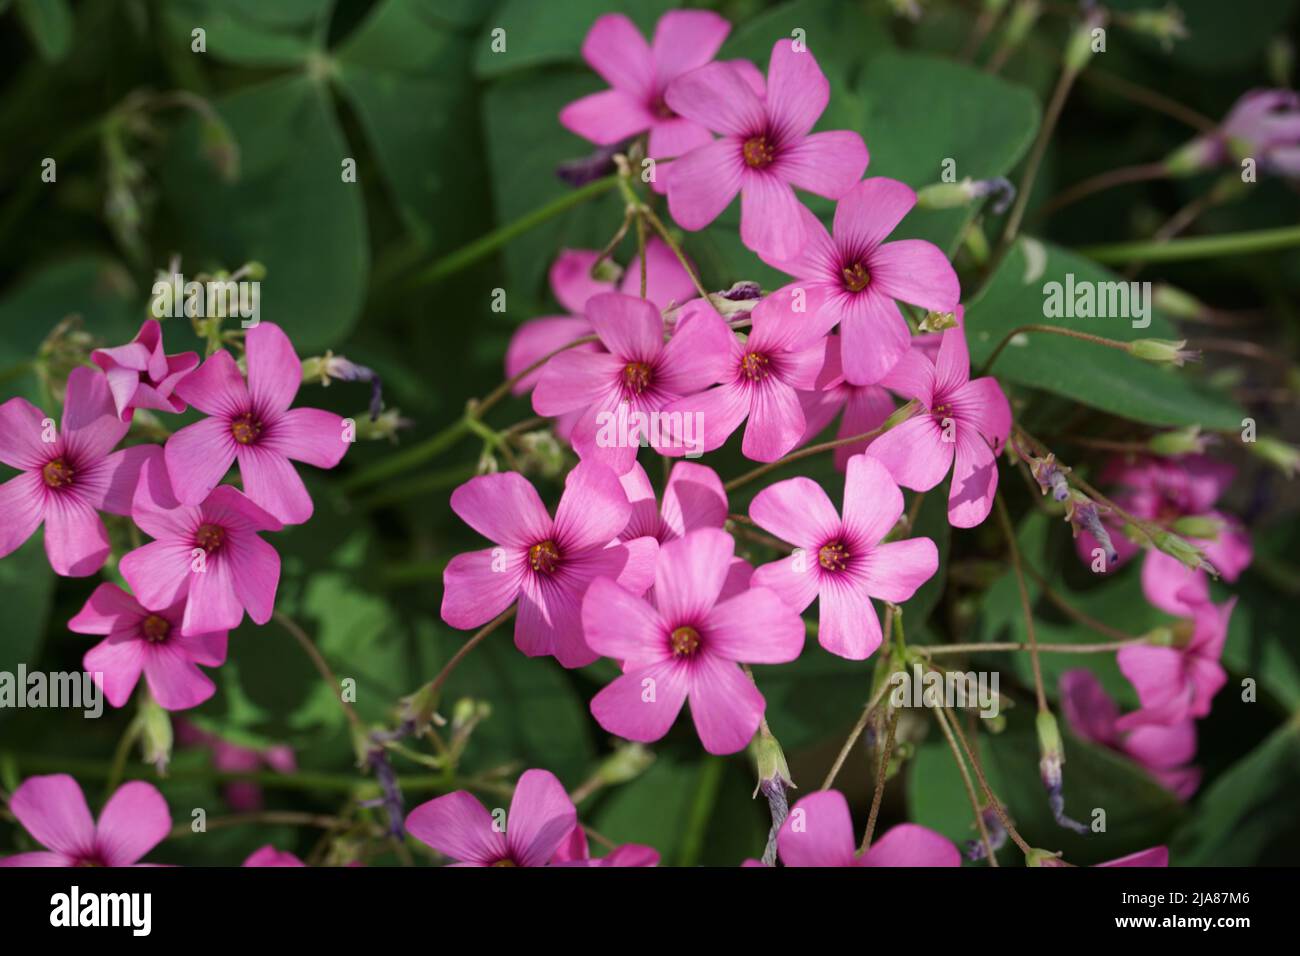 Oxalis articulata florecimiento espesa y planta decorativa con muchas flores diminutas e intensas de color rosa Foto de stock